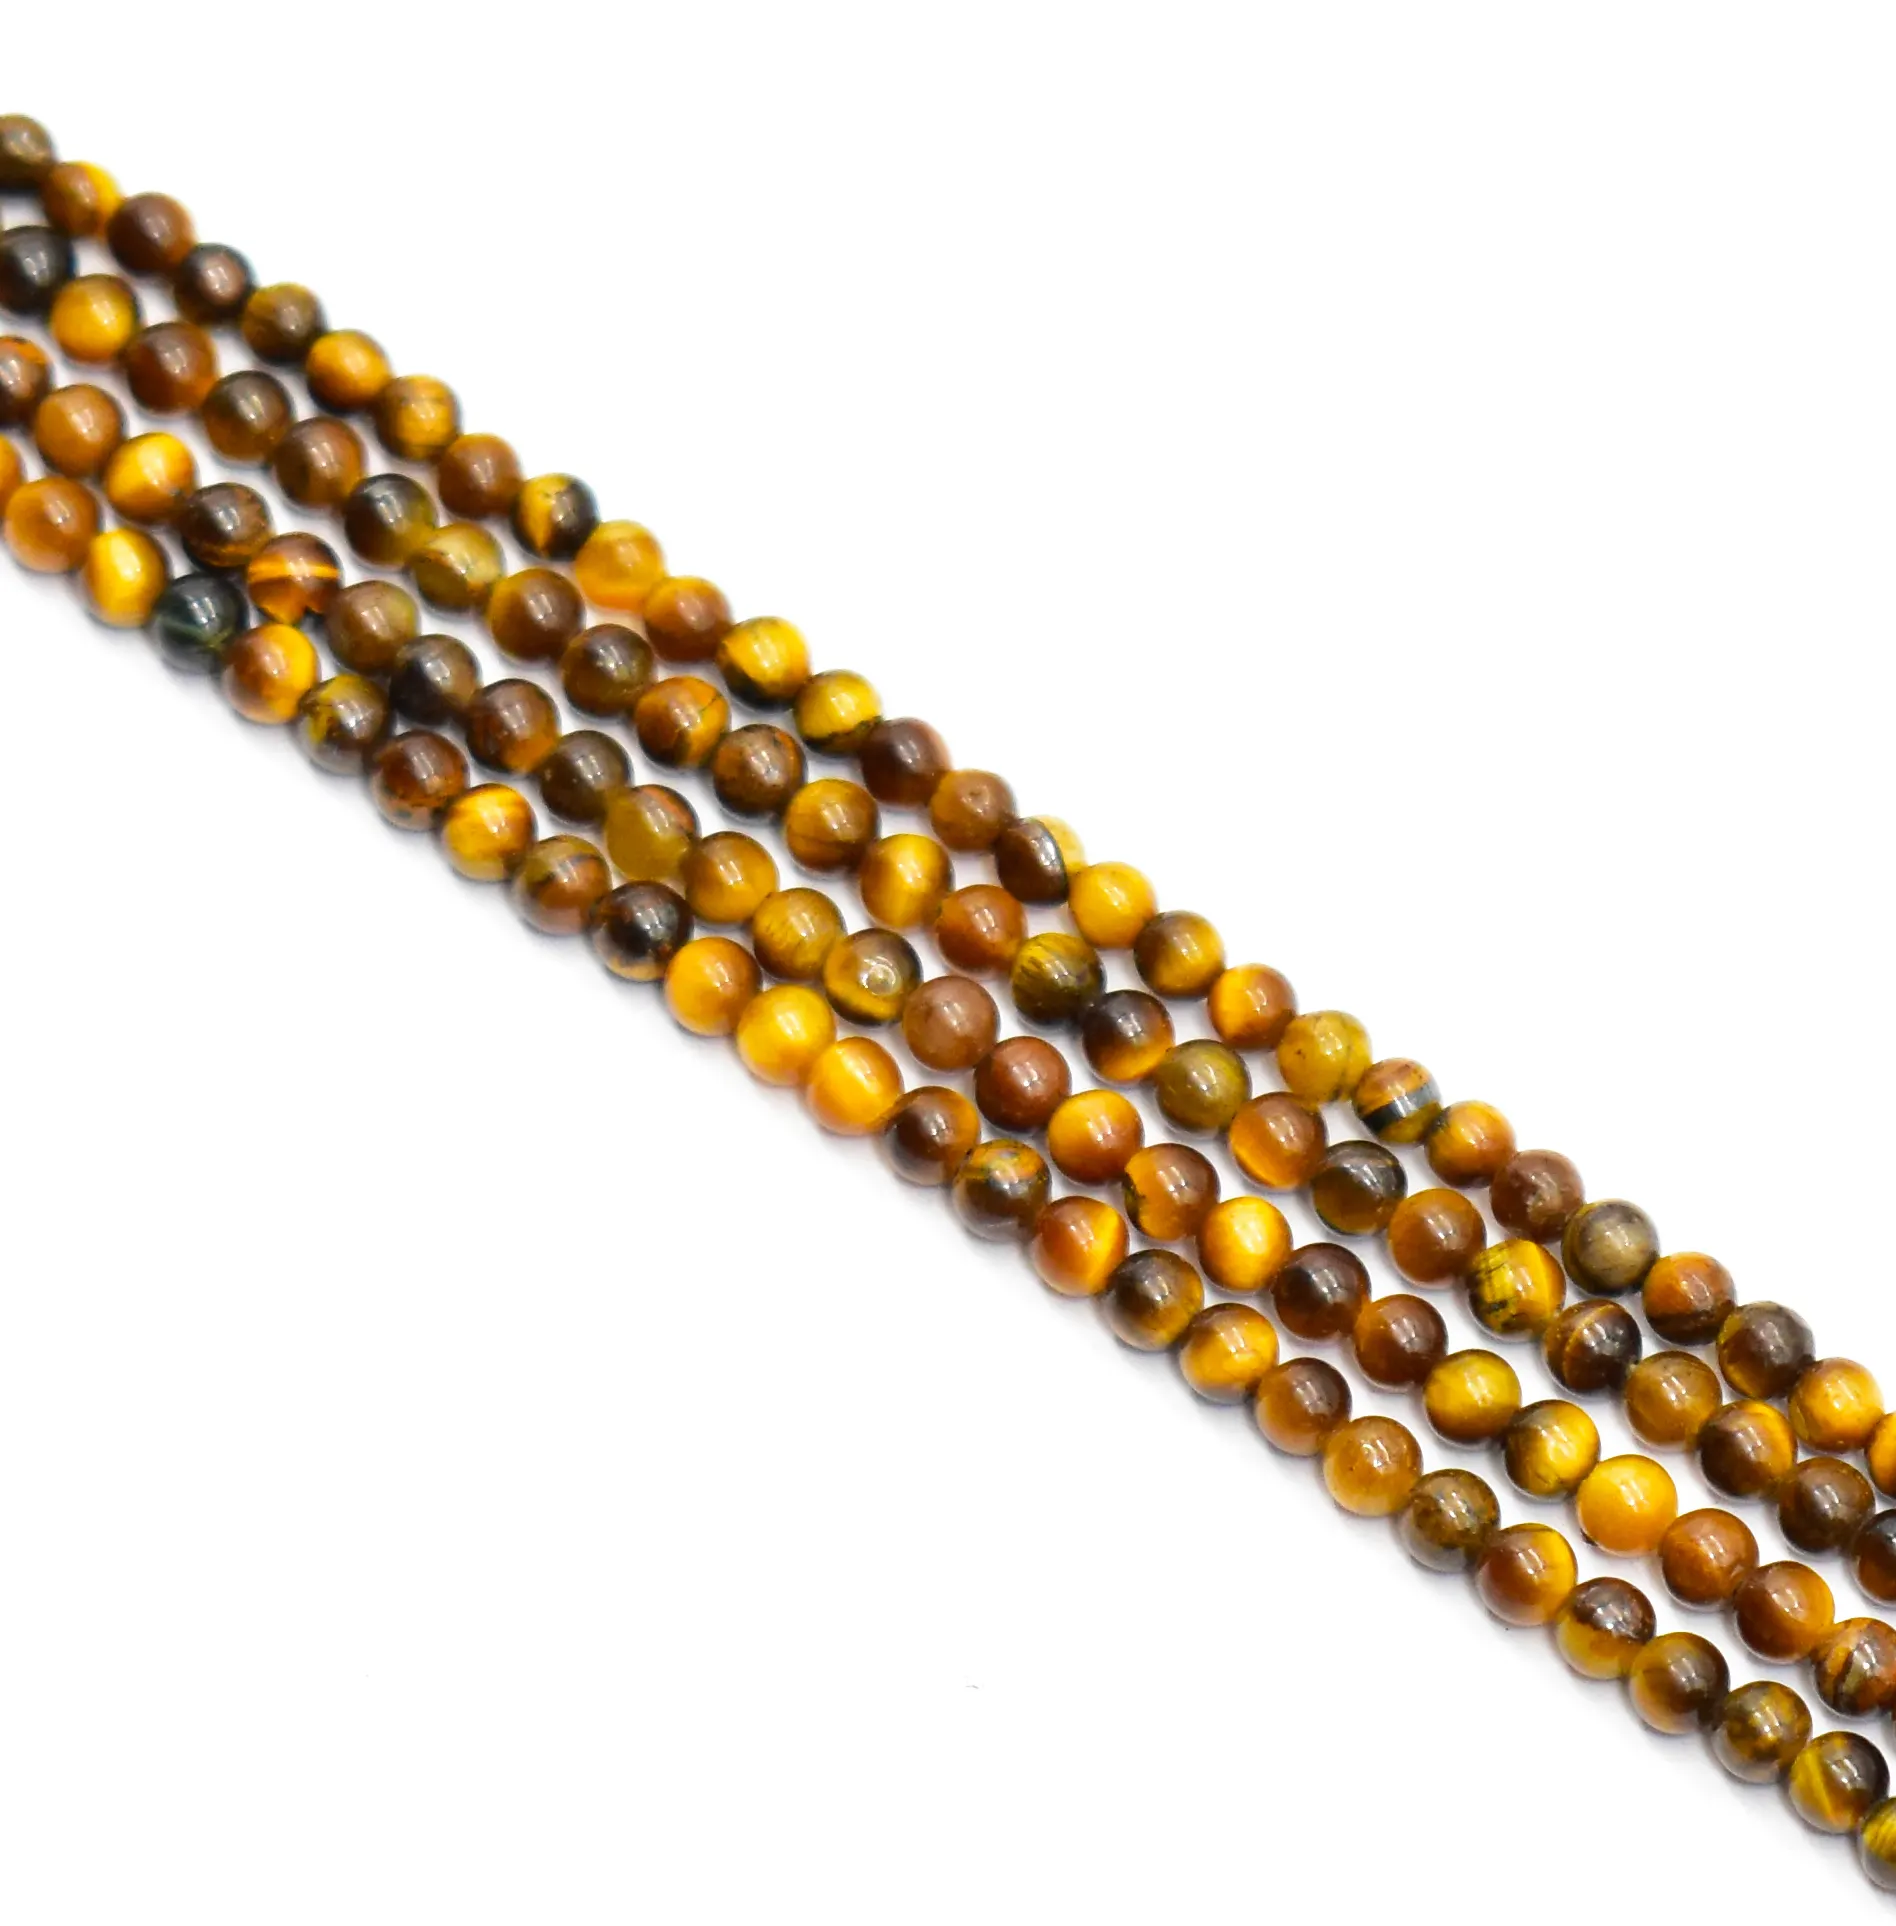 Perle œil de tigre naturelle de qualité supérieure 3 mm 16 pouces (toutes les tailles disponibles) perles de cristaux pour la fabrication de bijoux